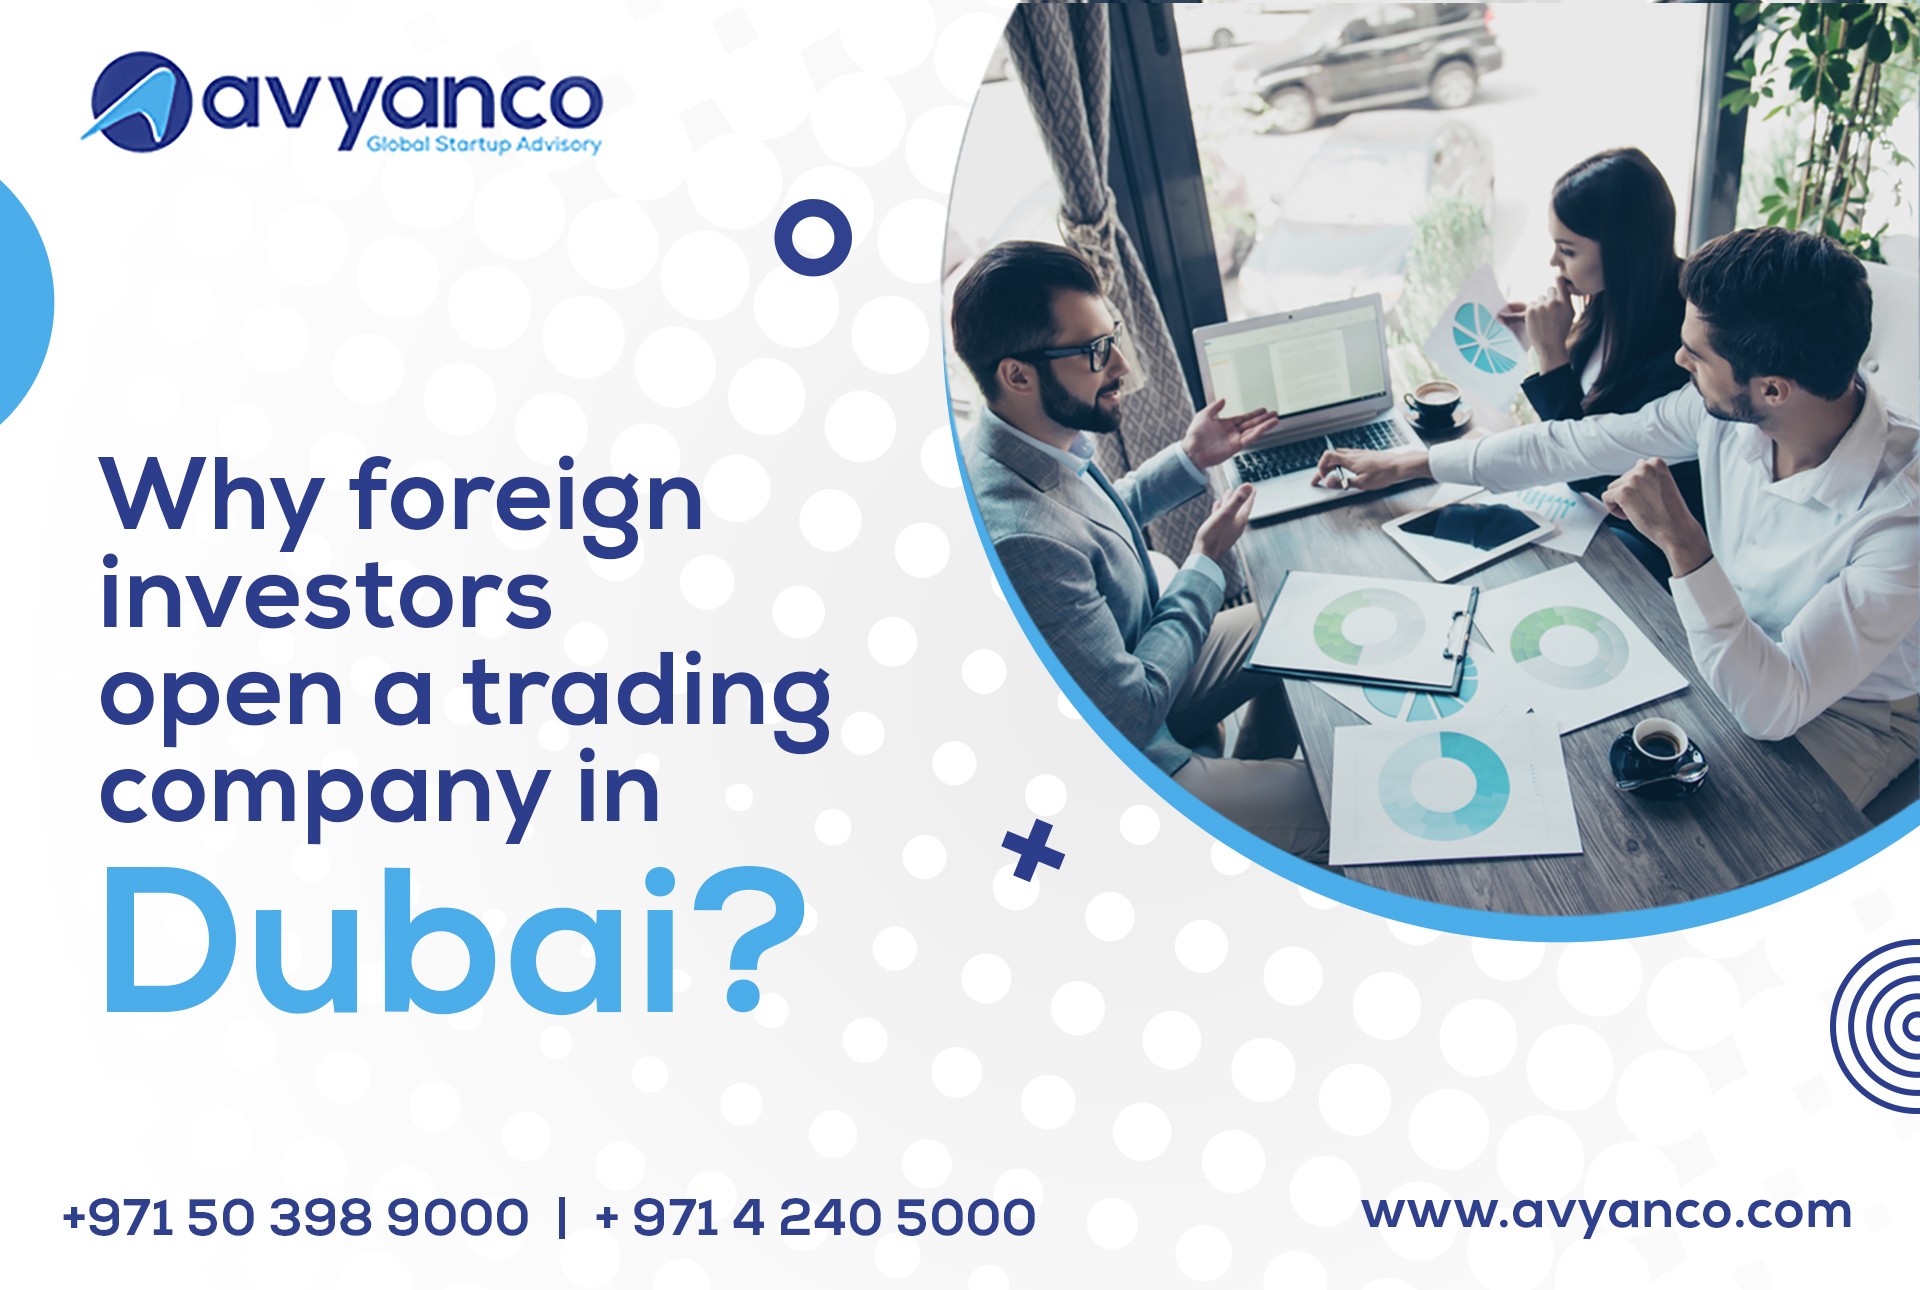 open a trading company in Dubai